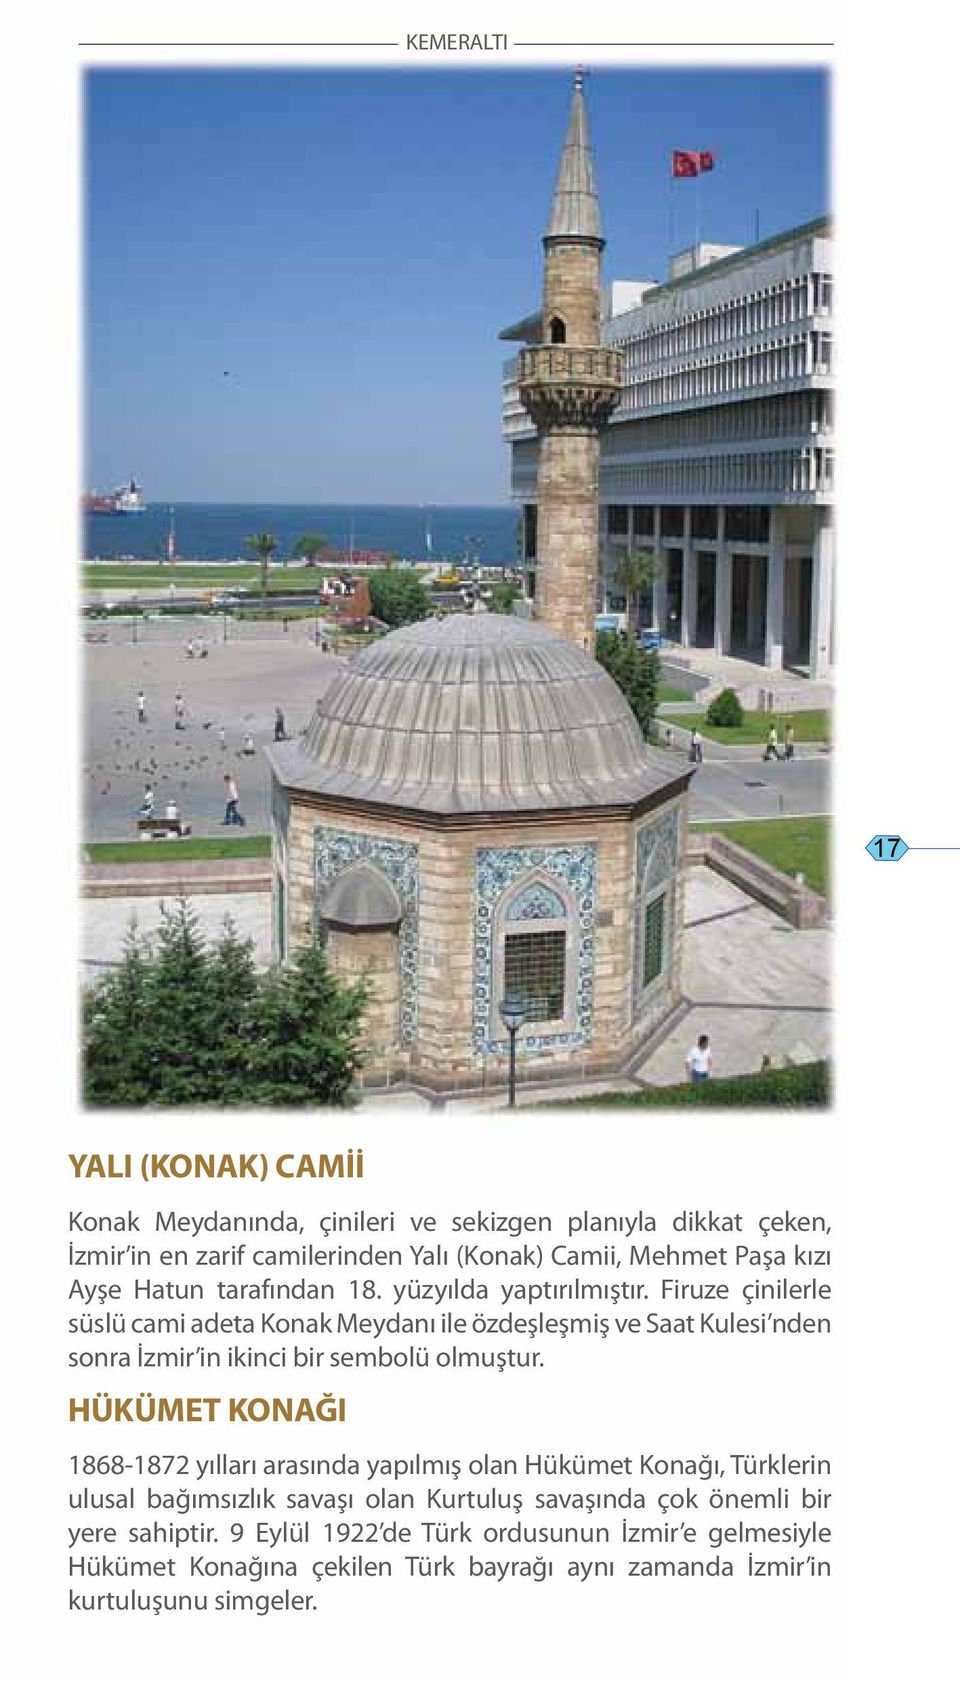 Firuze çinilerle süslü cami adeta Konak Meydanı ile özdeşleşmiş ve Saat Kulesi nden sonra İzmir in ikinci bir sembolü olmuştur.